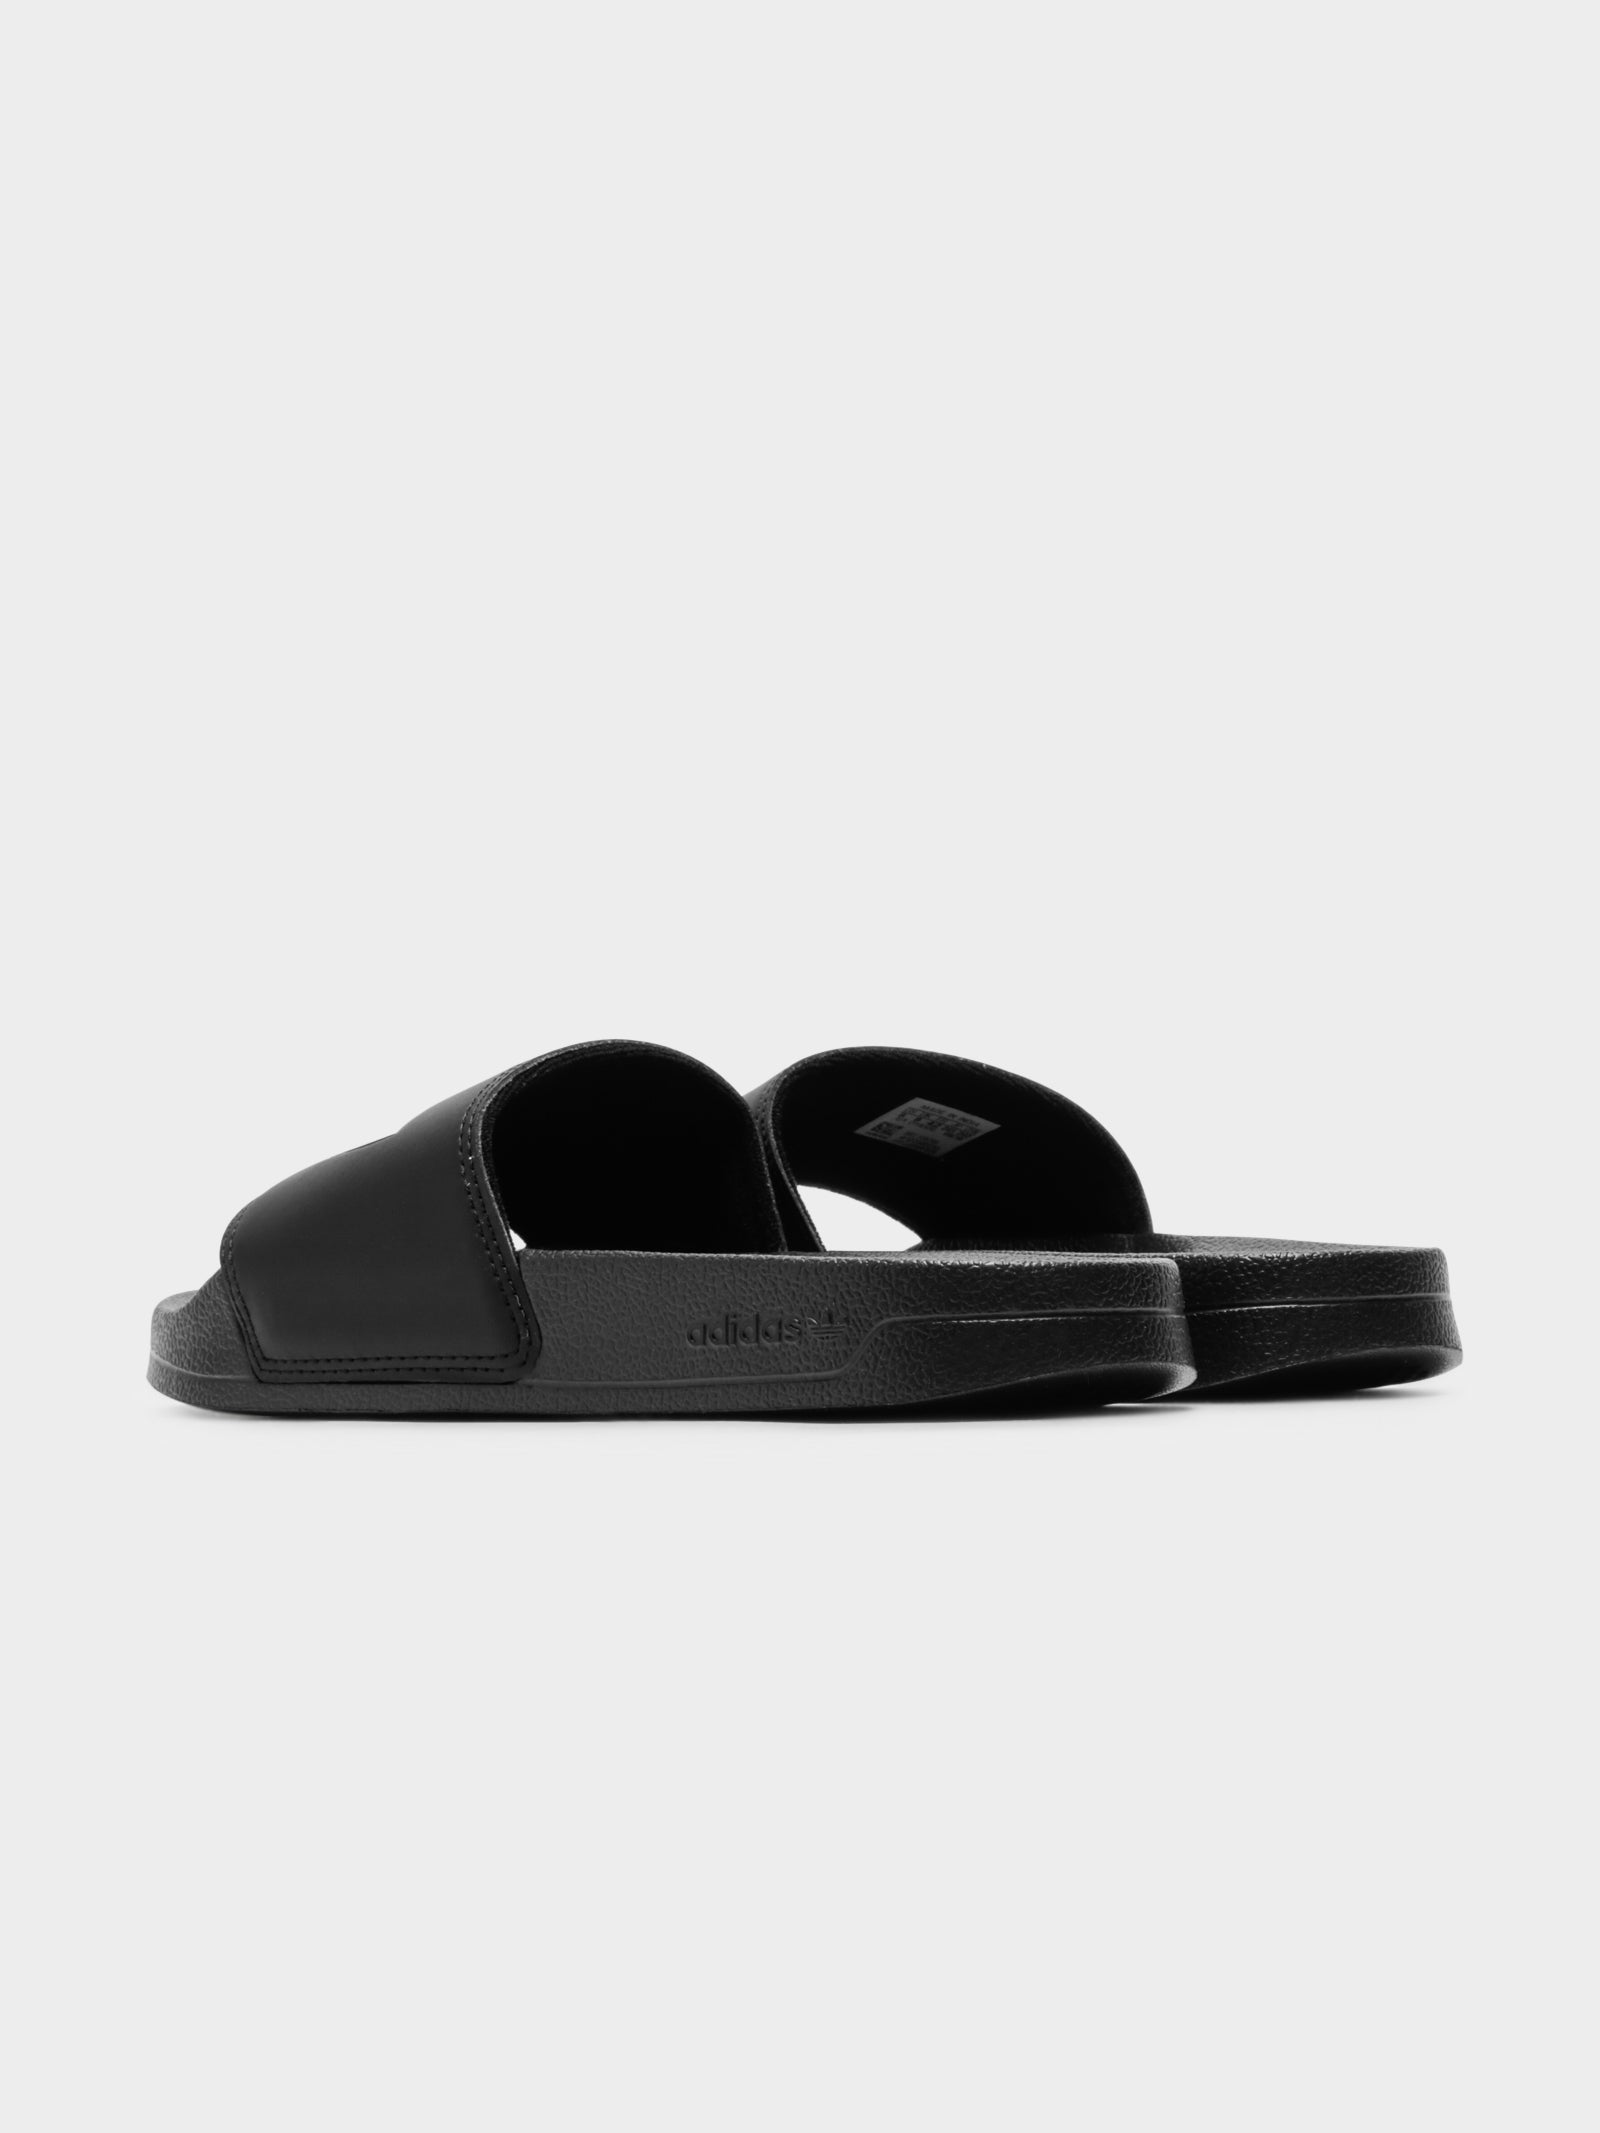 Unisex Adilette Lite Slides in Black & White